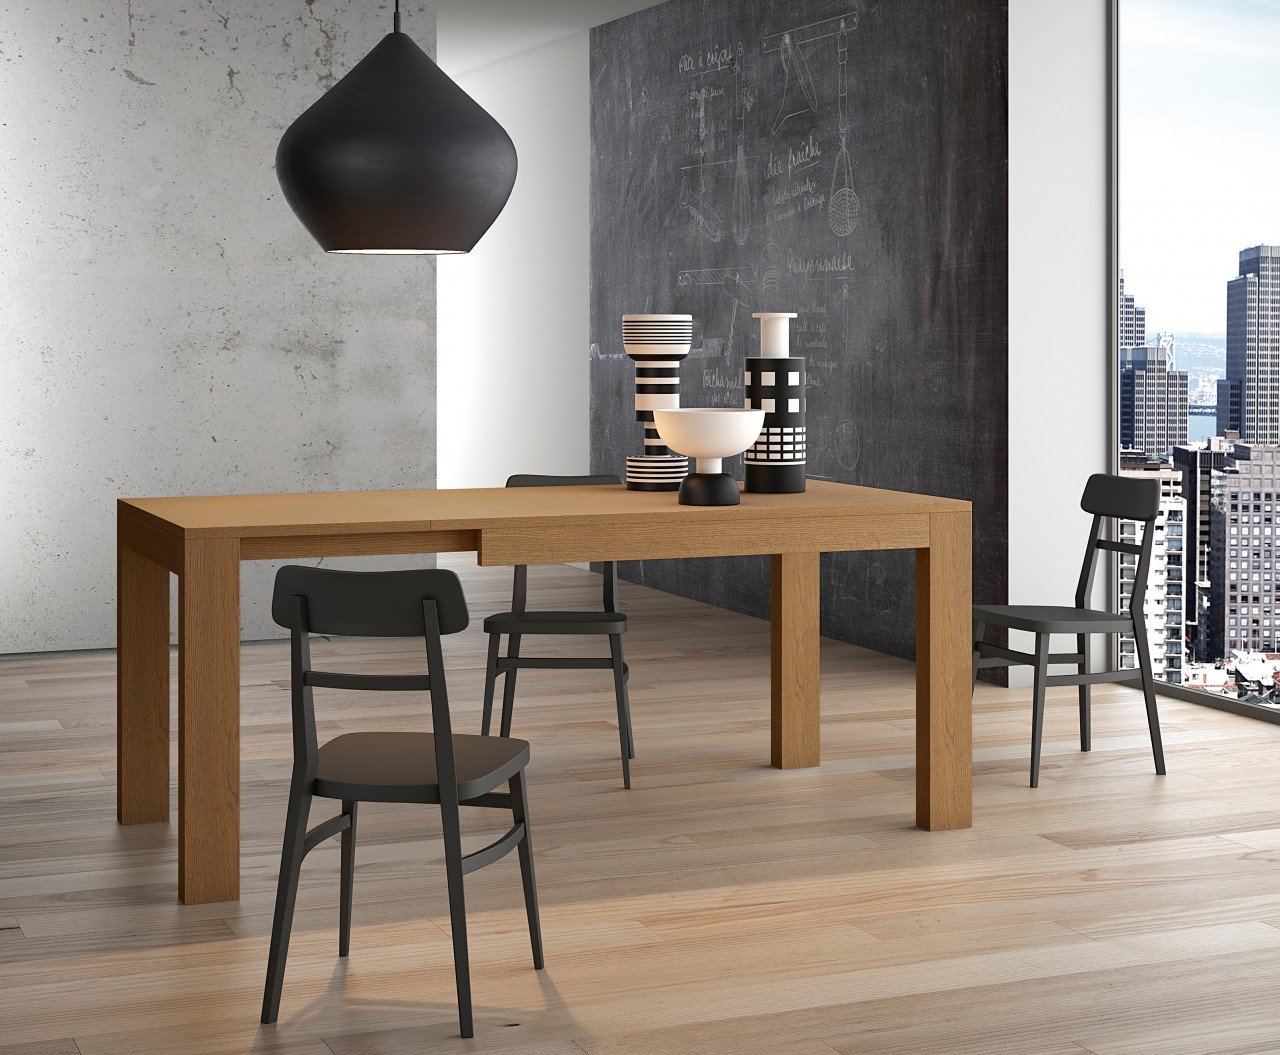 Mesas y sillas :: Cocinas :: Concret Design, Reformas integrales & interiorismo